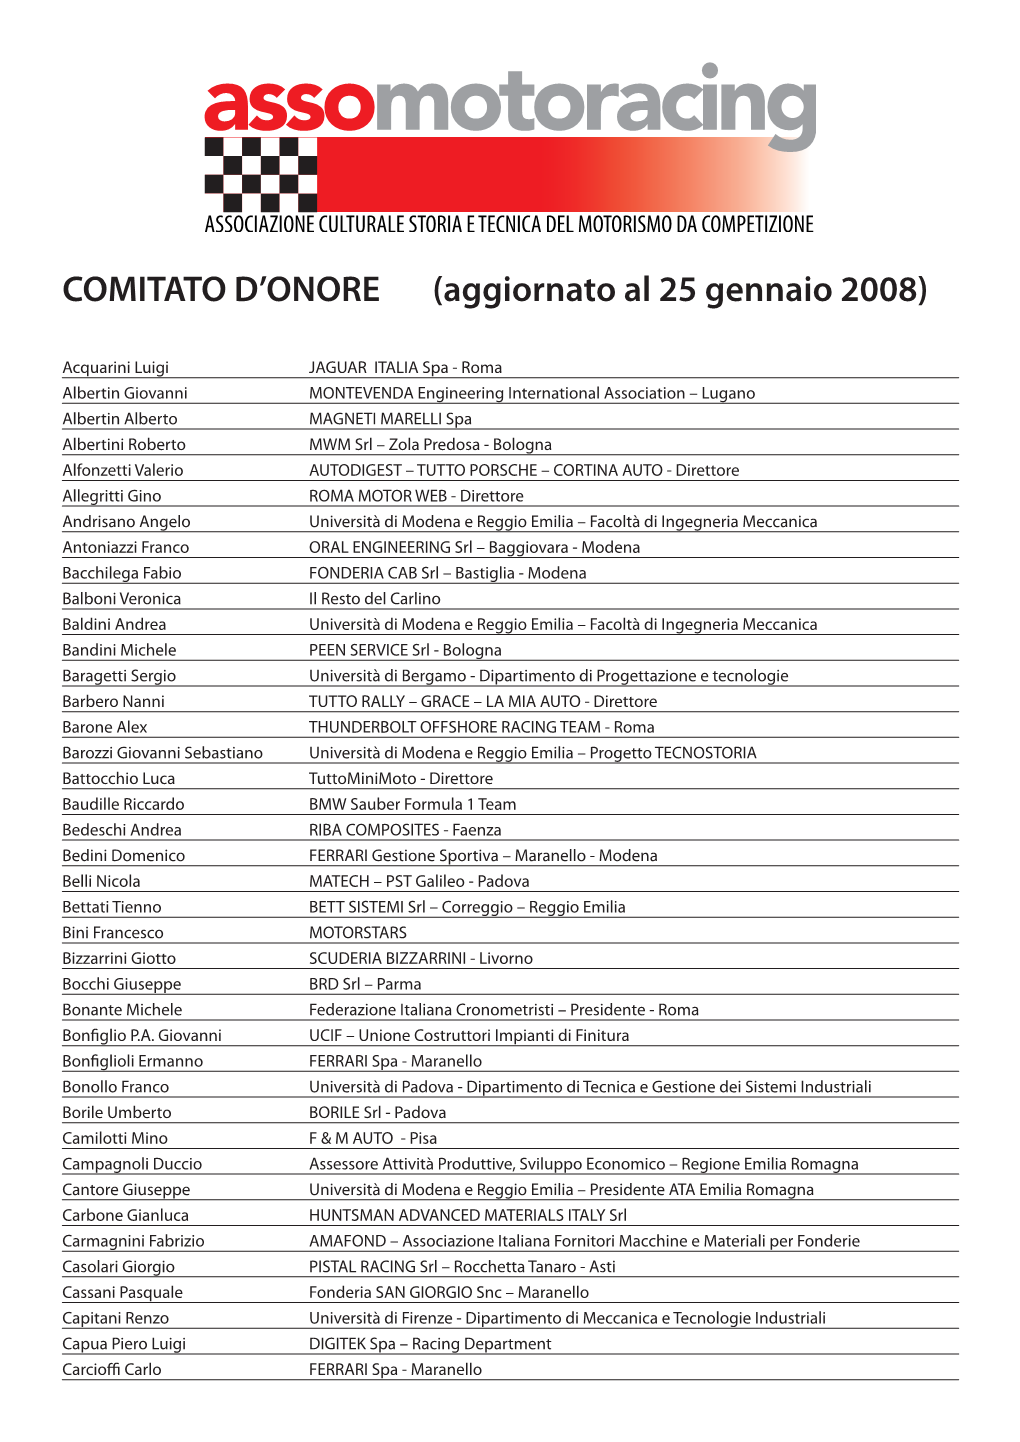 COMITATO D'onore (Aggiornato Al 25 Gennaio 2008)